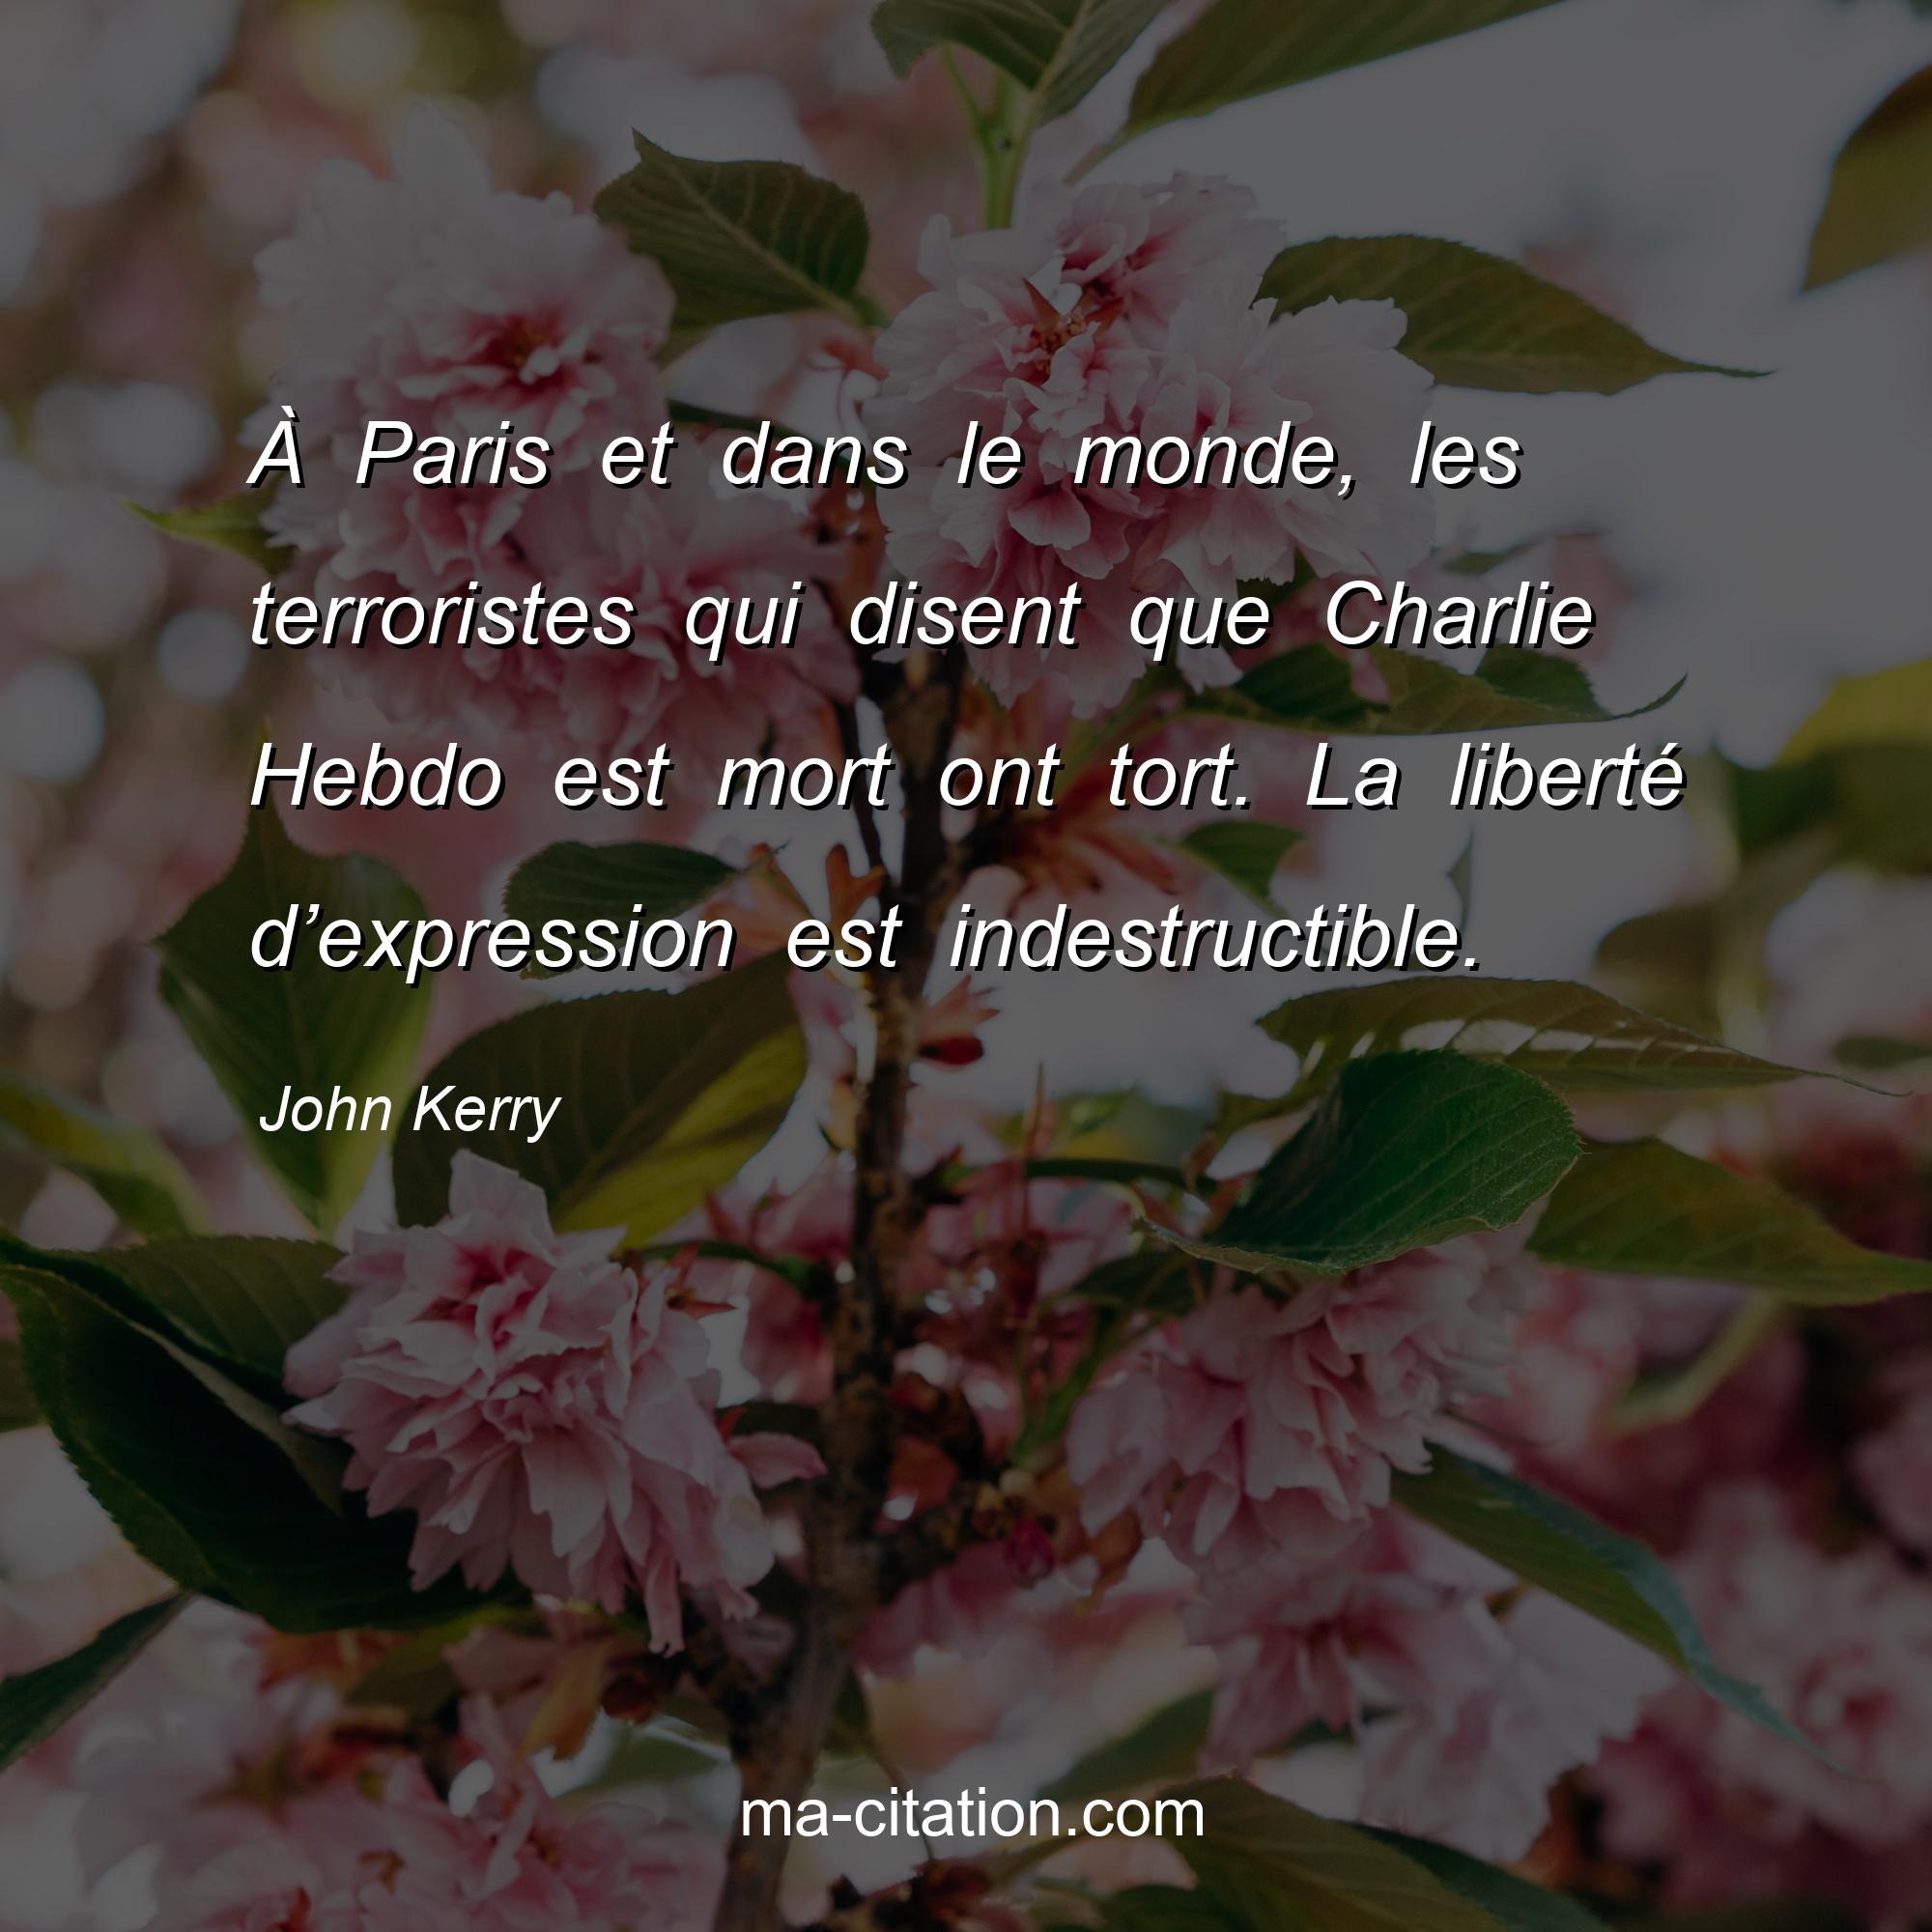 John Kerry : À Paris et dans le monde, les terroristes qui disent que Charlie Hebdo est mort ont tort. La liberté d’expression est indestructible.